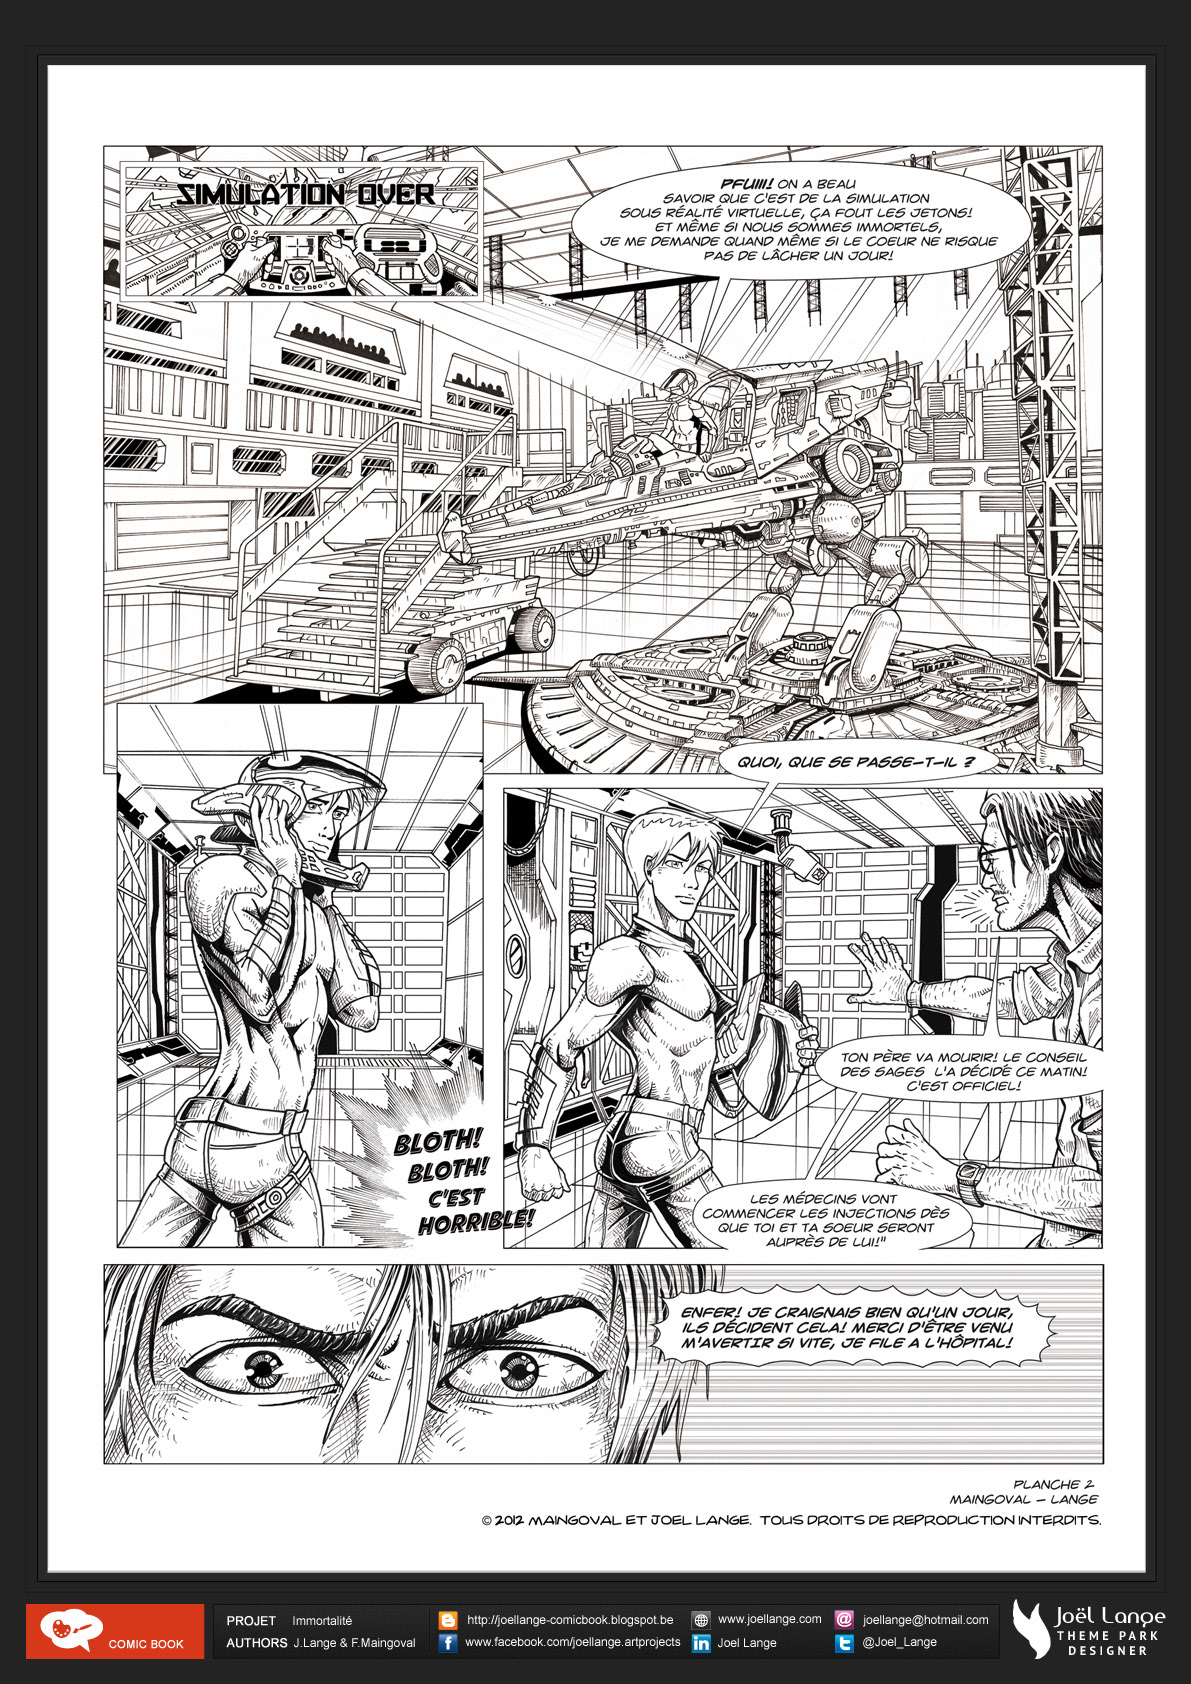 comic science-fiction sicfi inking pencil ink Joel lange Board color Maingoval bande-dessinée  bd  projet